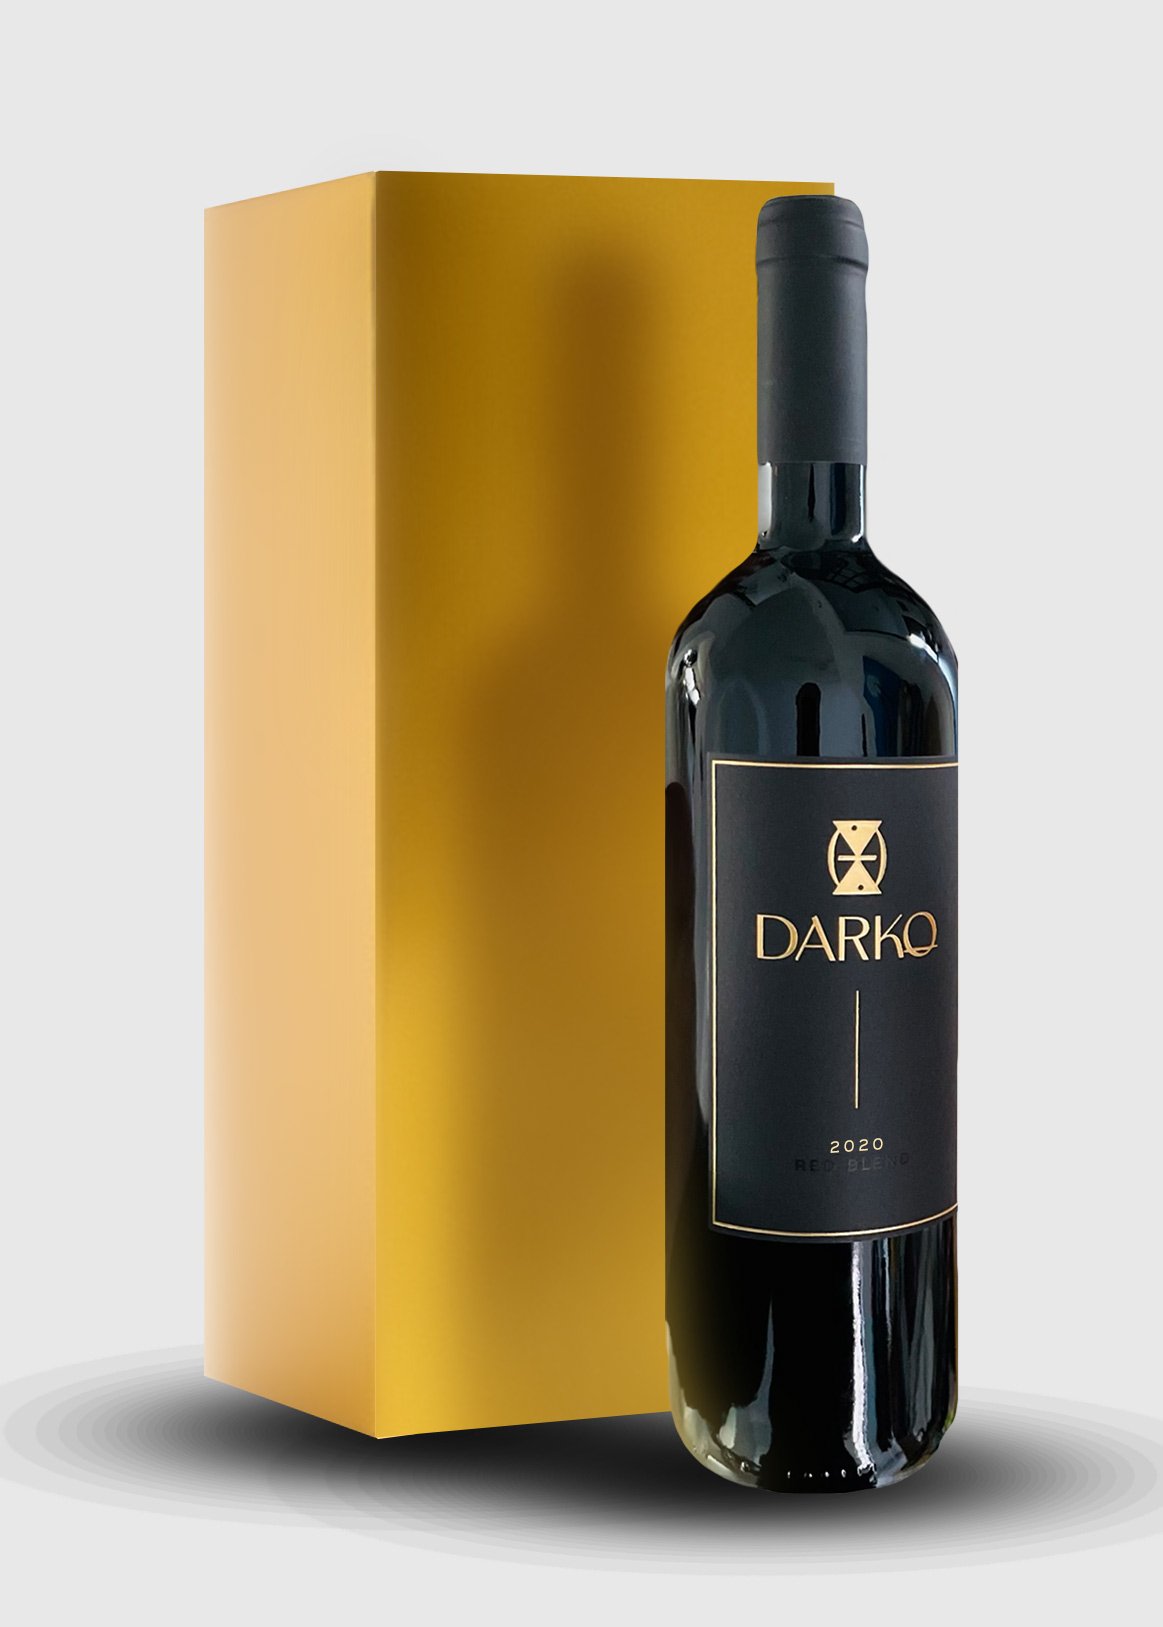 3 2020 — Red Darko - Wines Wines Bottle Reserve Darko Blend Set